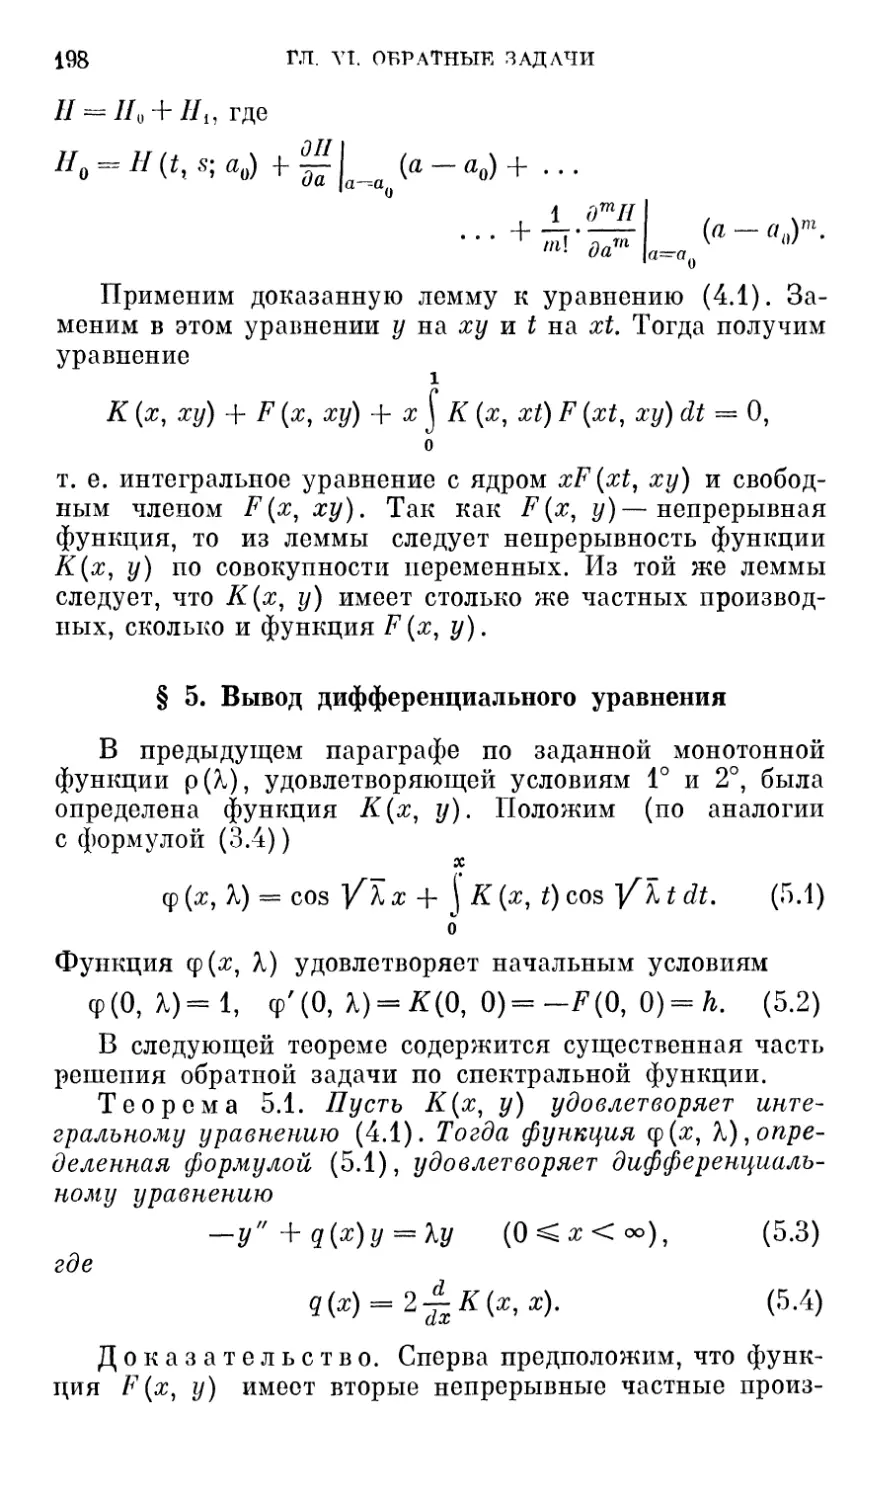 § 5. Вывод дифференциального уравнения